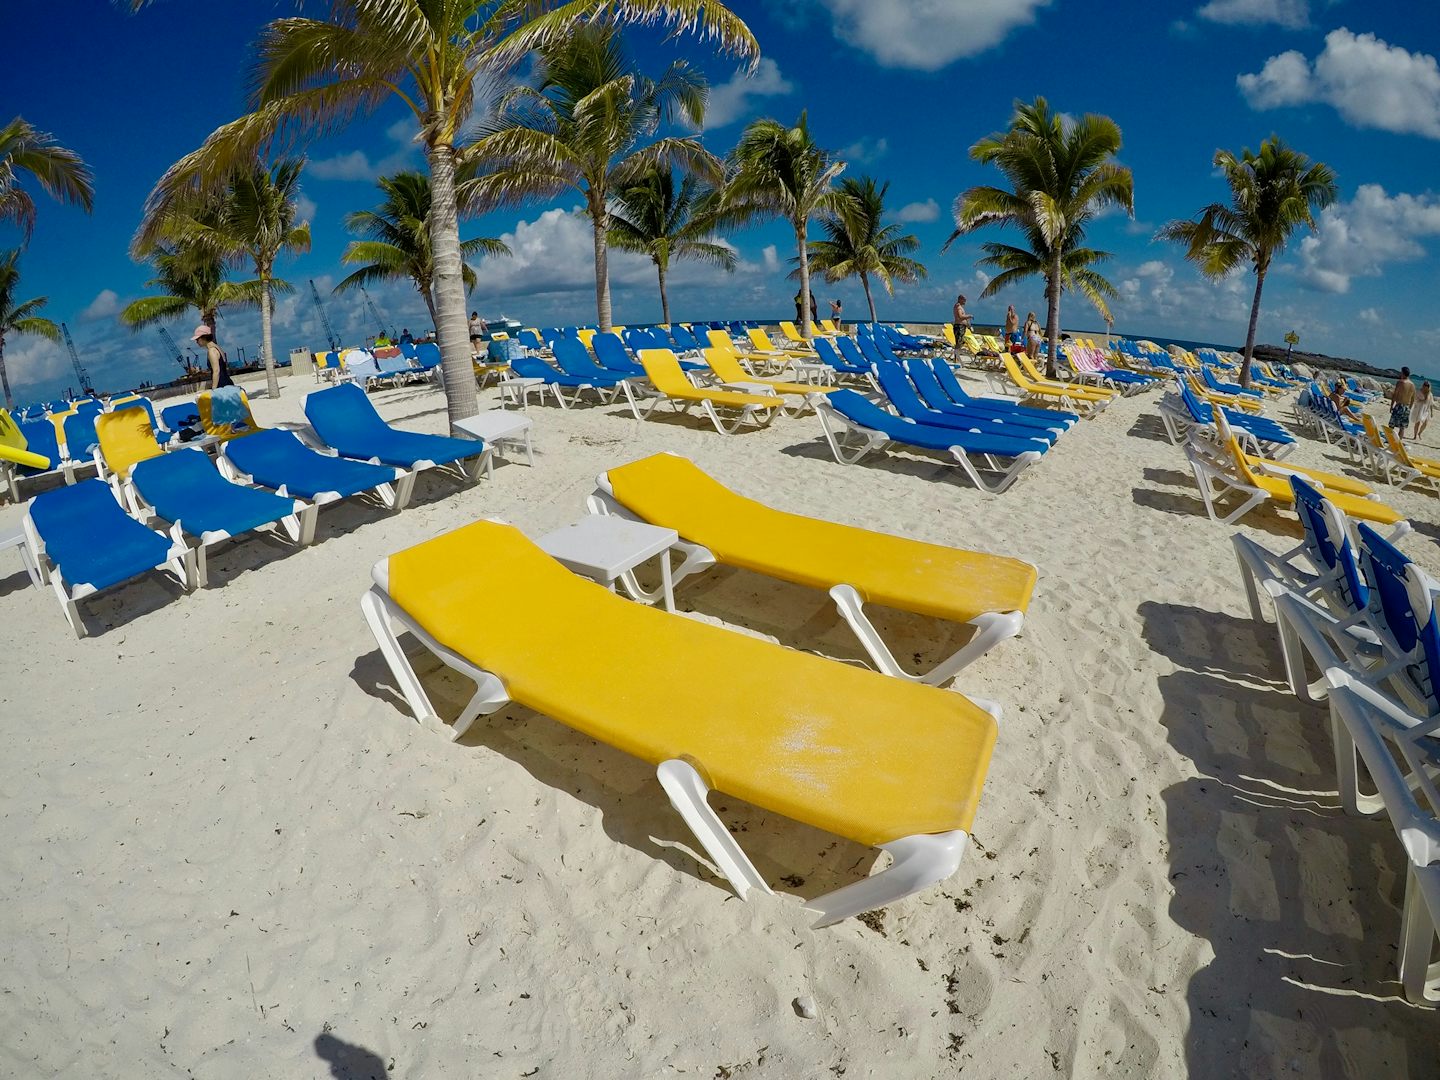 Coco Cay beach